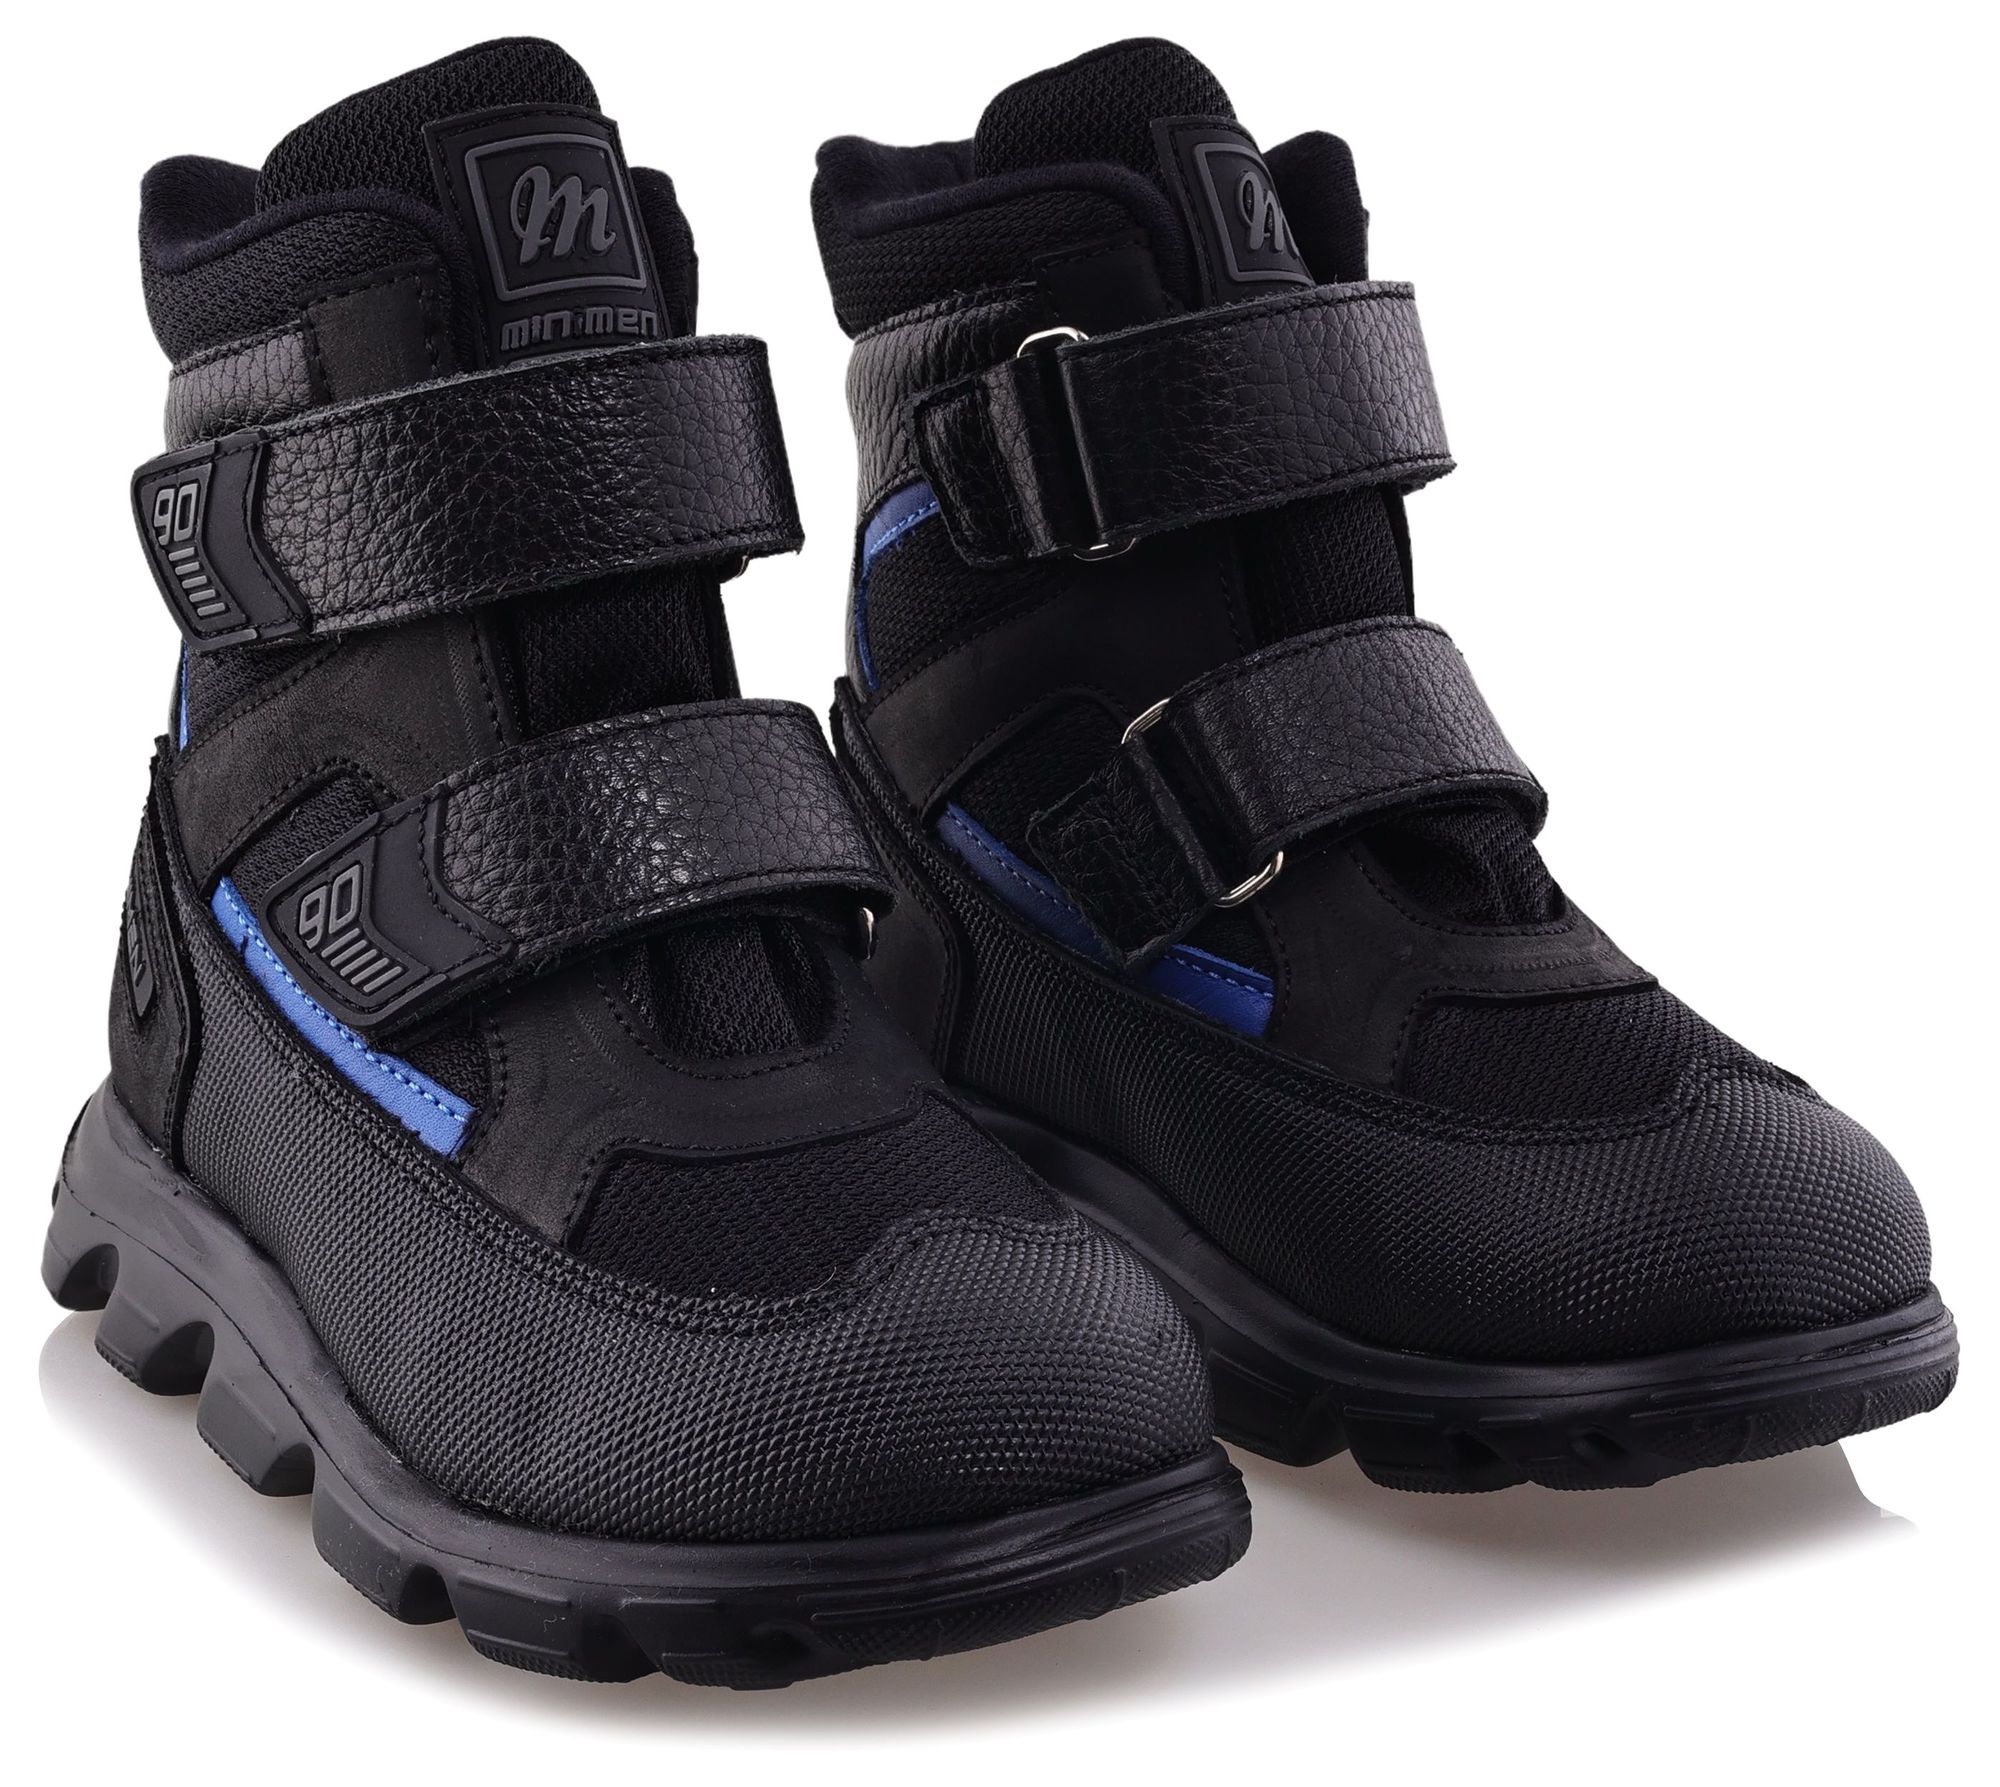 Ботинки Minimen для мальчиков, чёрные, размер 31, 2641-54-23B-01